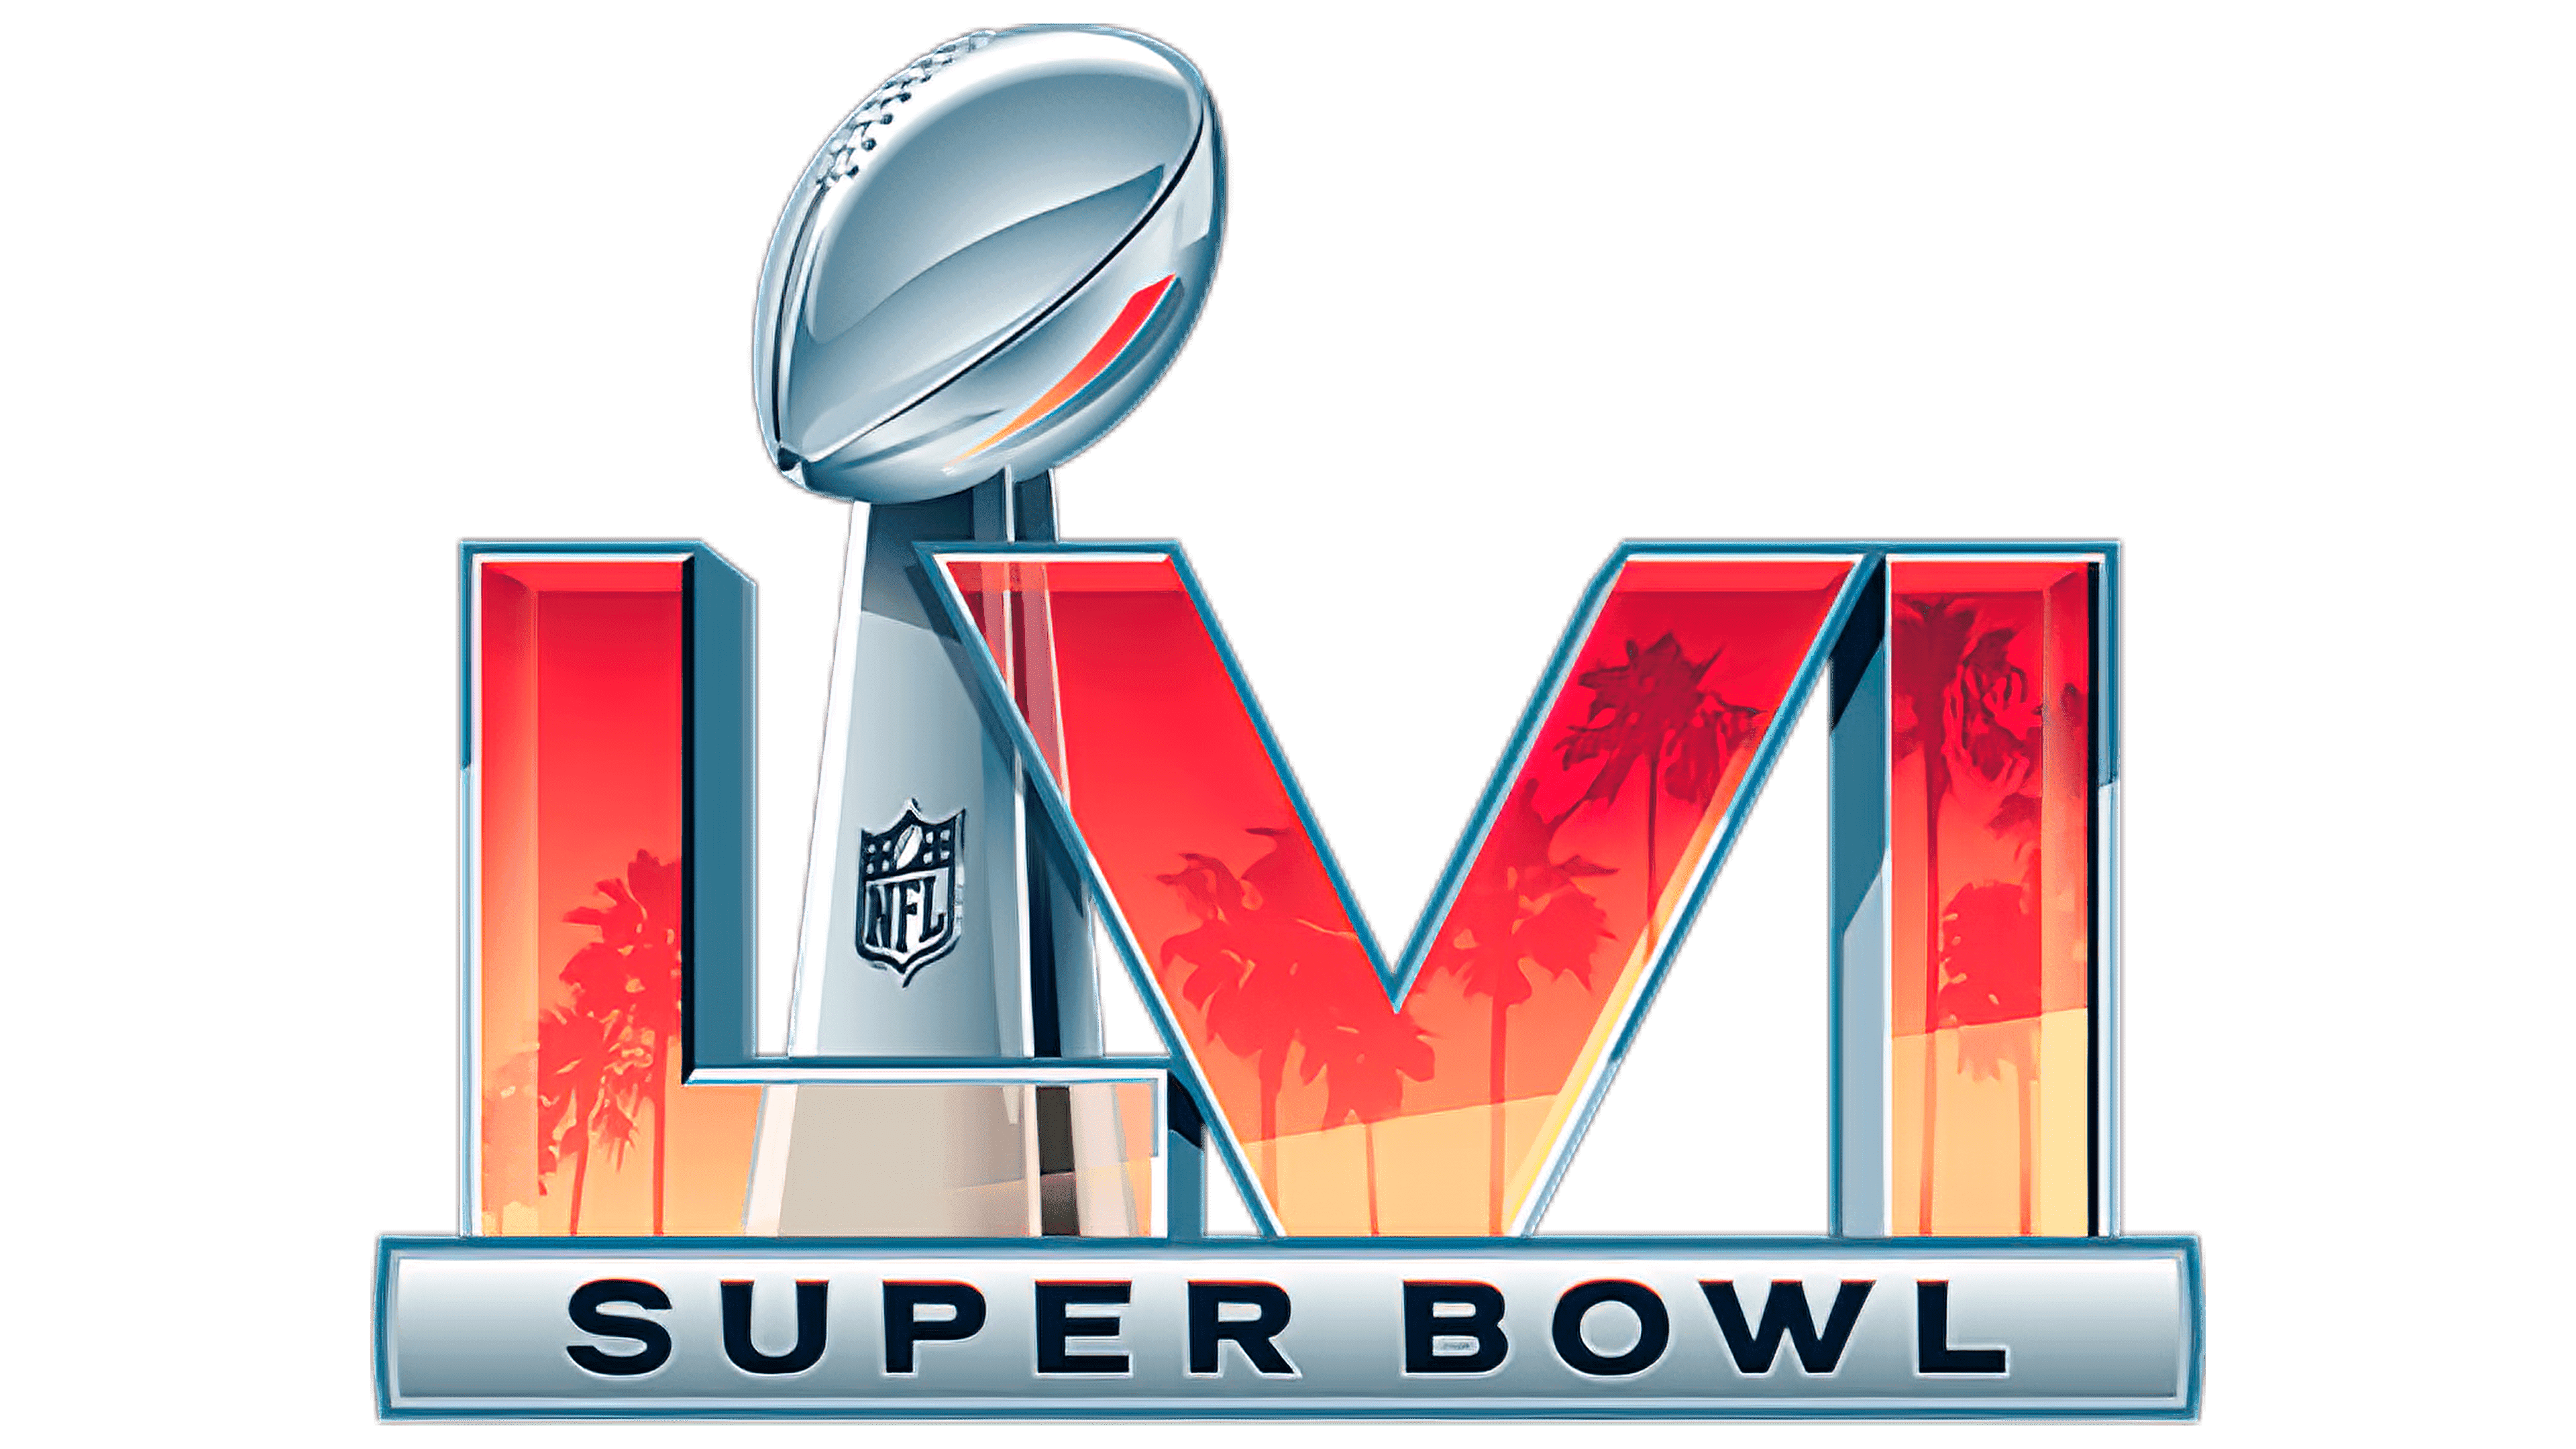 New Super Bowl LVI logo